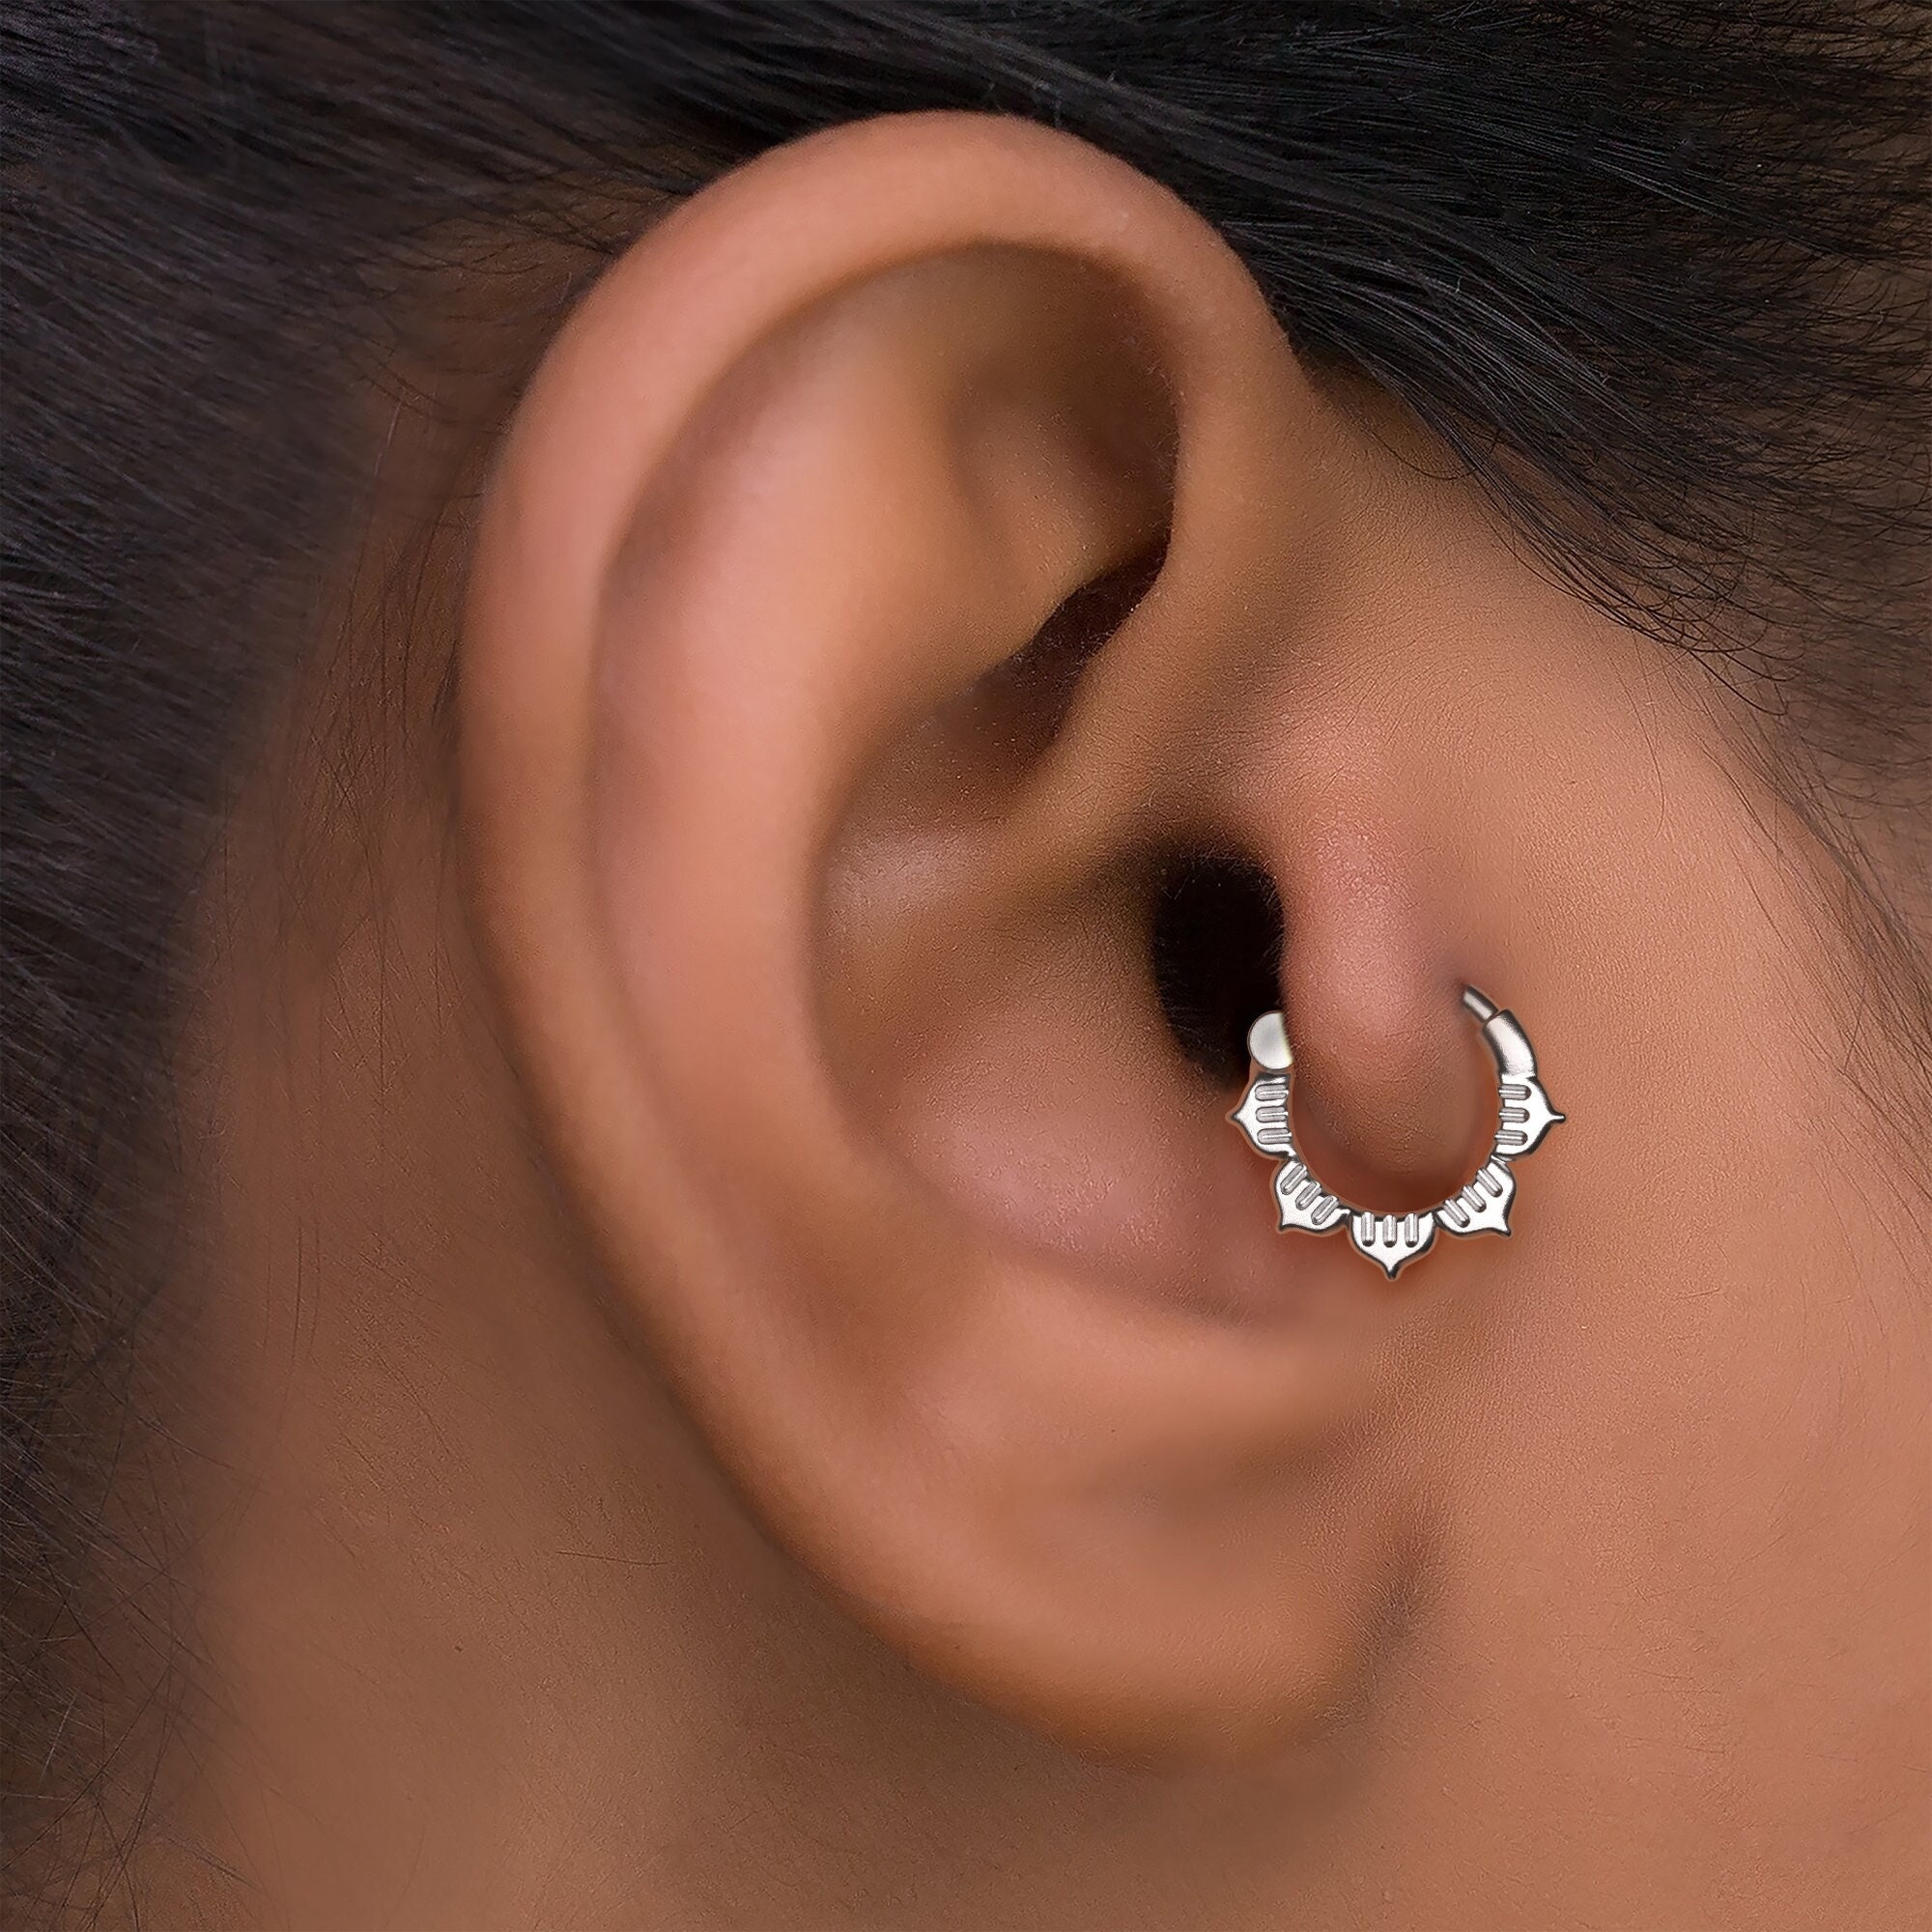 Moonstone Earrings 925 Sterling Silver Tragus Earrings Cartilage Earrings  Screw Back Earrings Helix Piercing Jewelry Hypoallergenic Earrings for  Women  Walmart Canada